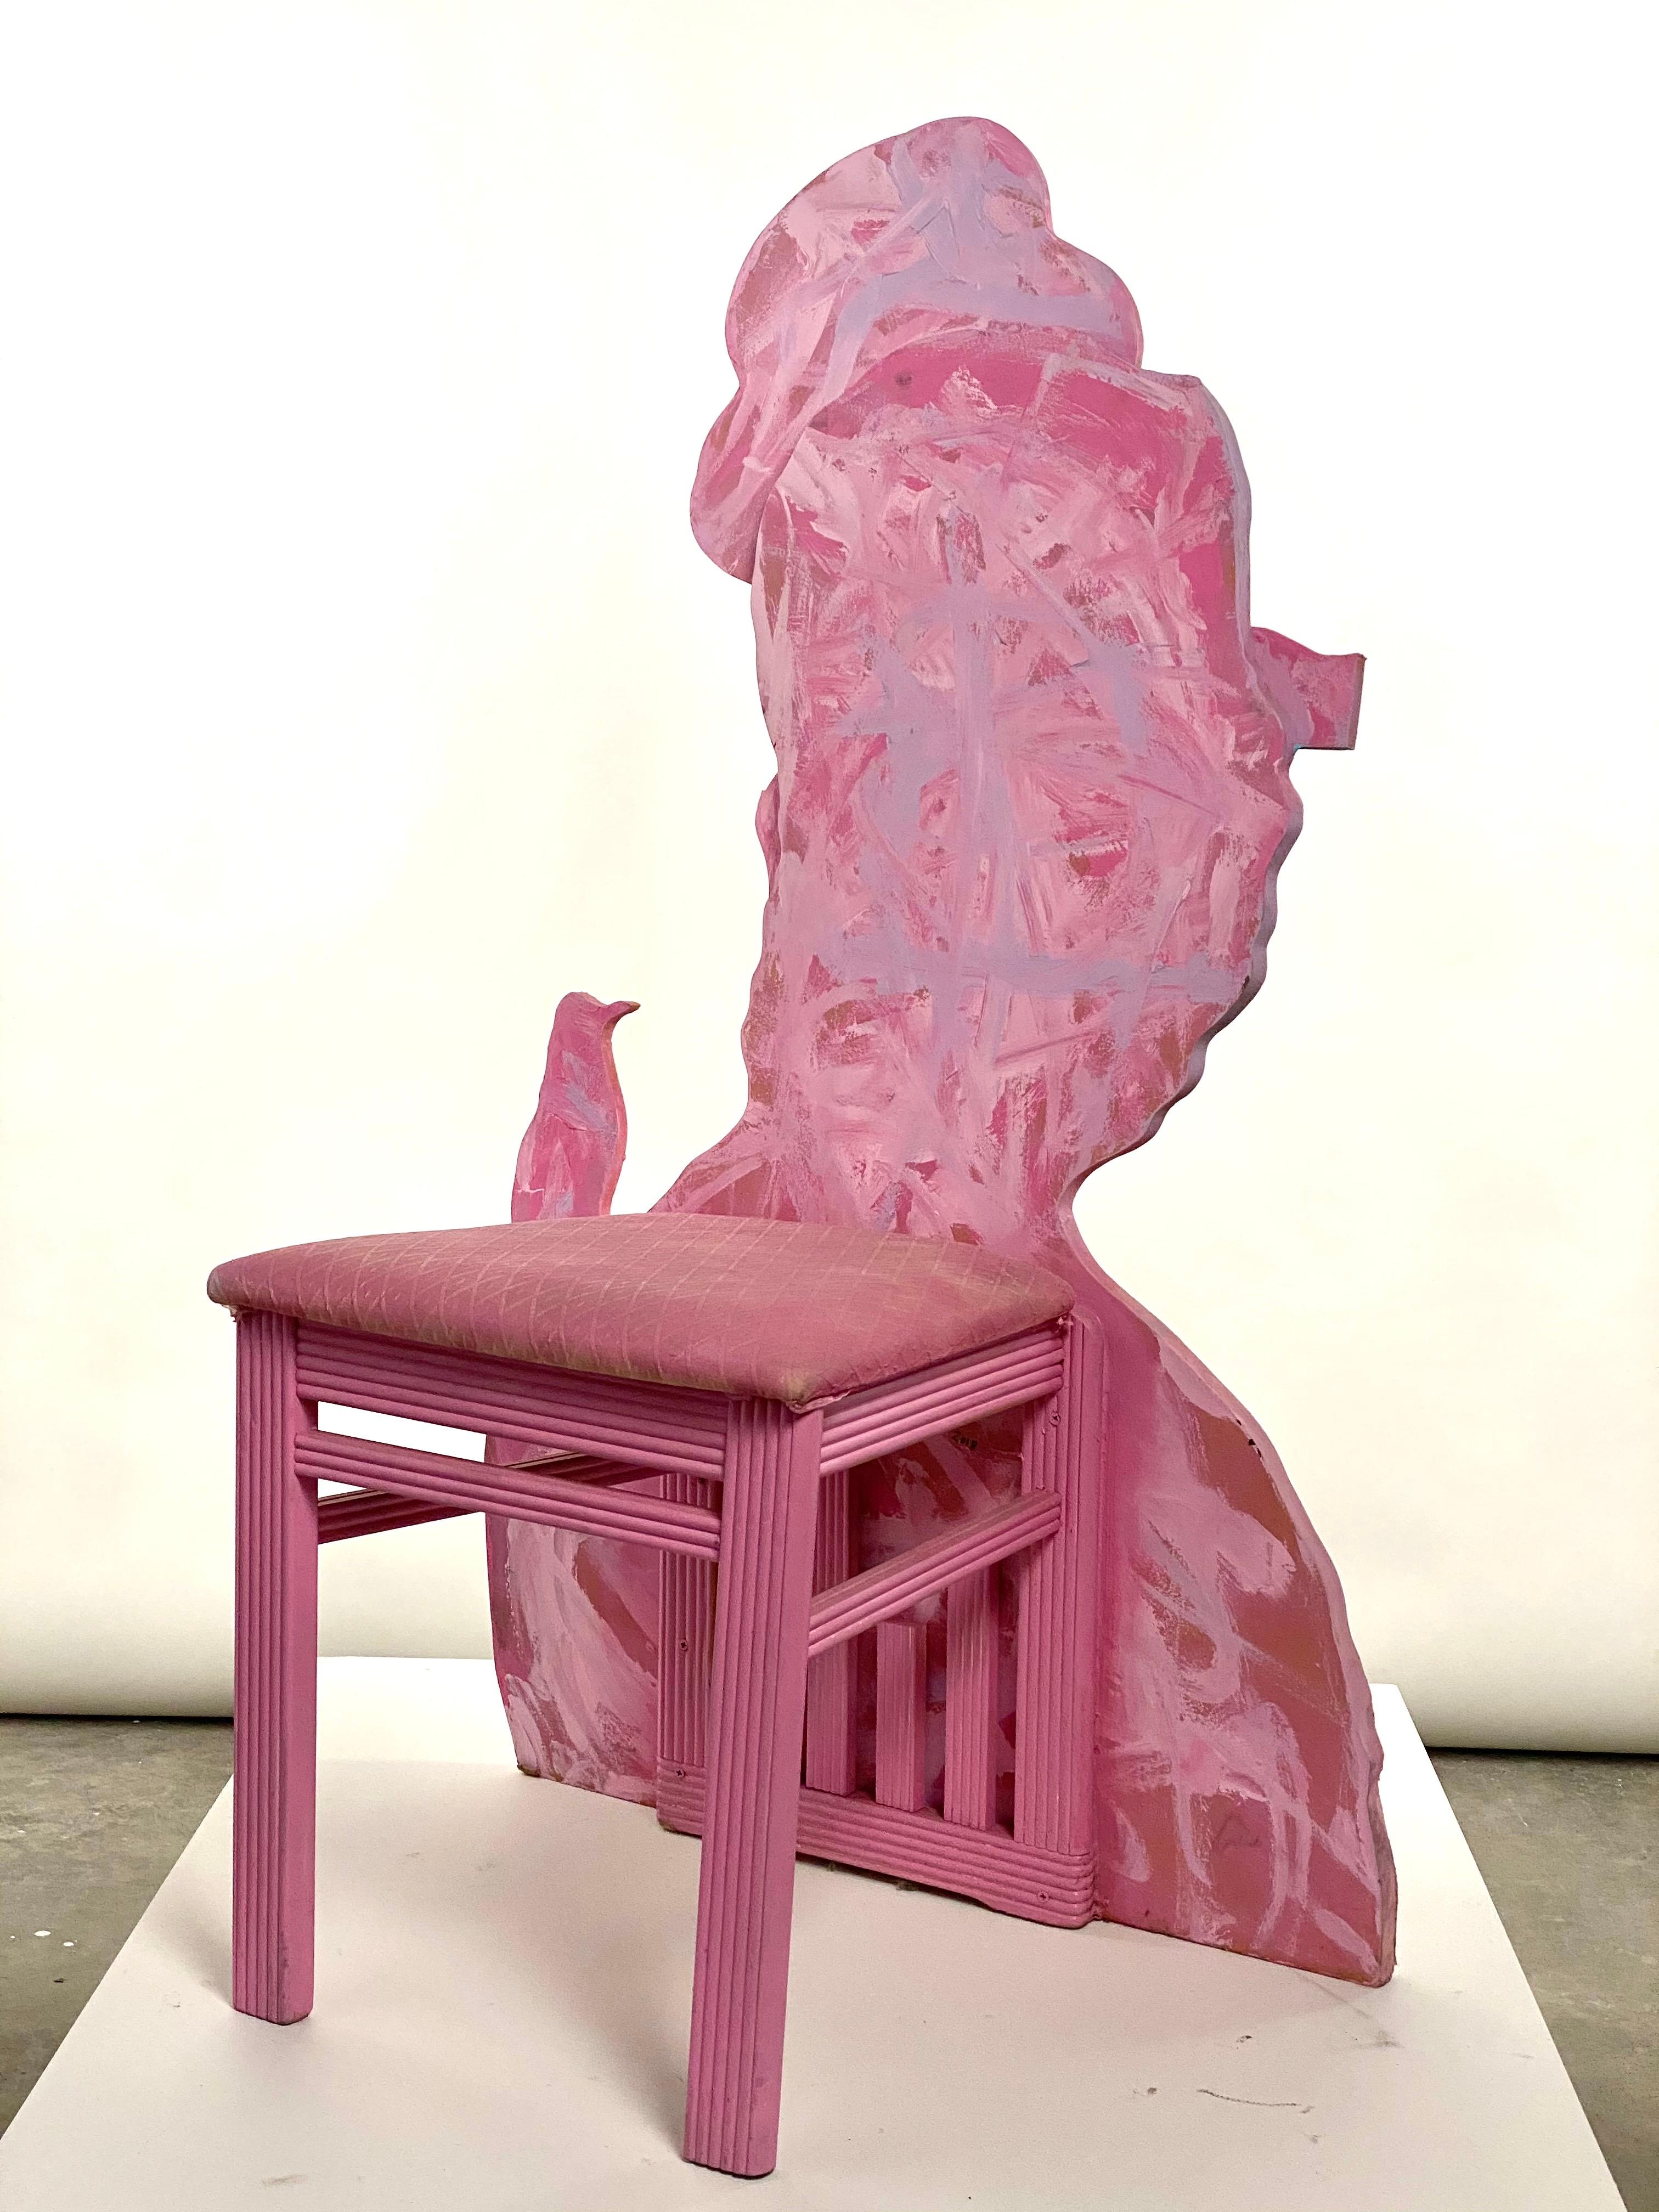 Dies ist ein neues Werk von Mattia Biagi
Skulpturaler Stuhl mit Collage auf Holz.
 